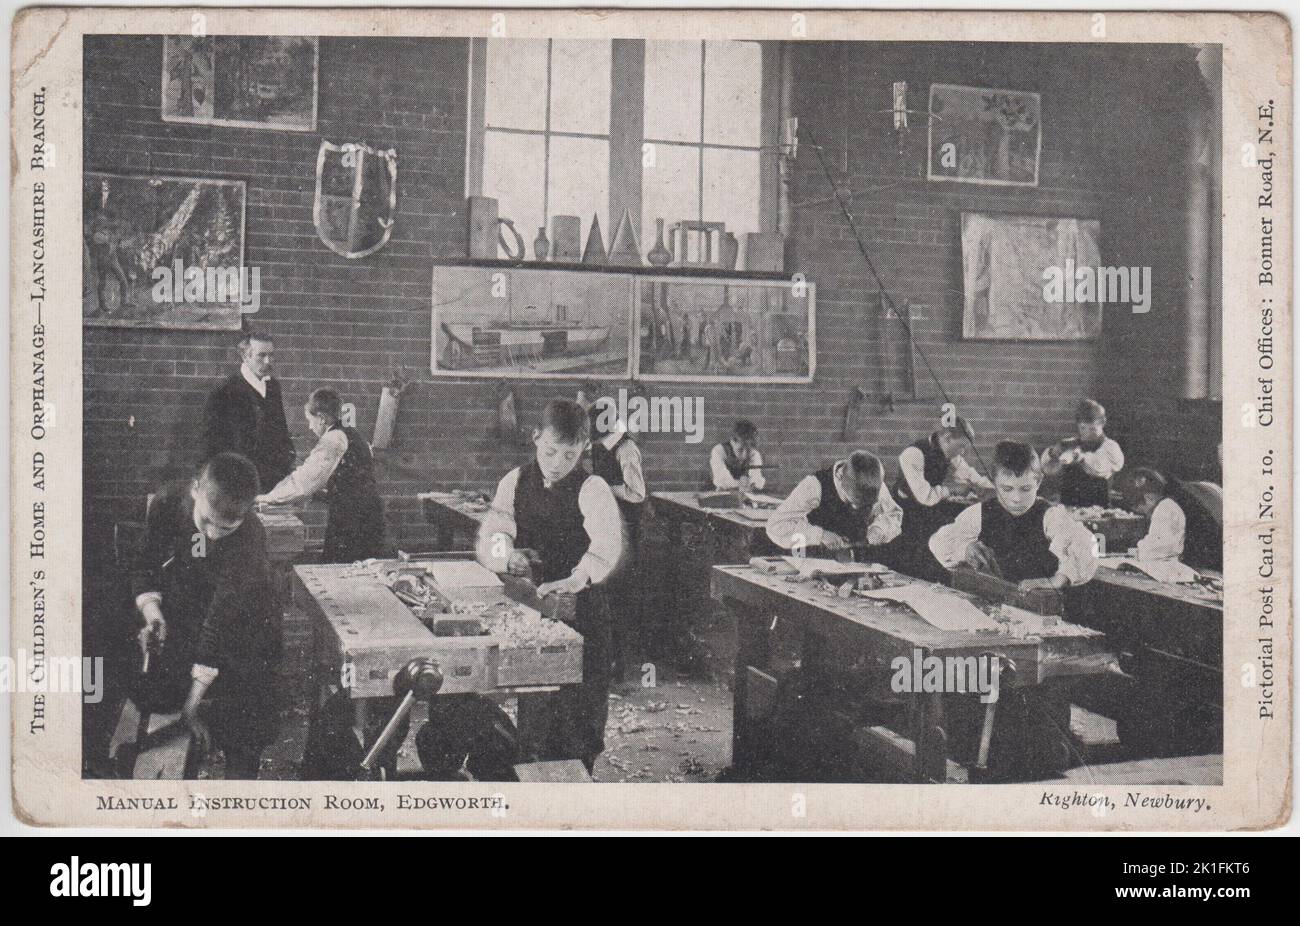 Salle d'instruction du manuel, Edgworth, maison des enfants et orphelinat, branche du Lancashire. Carte postale picturale montrant les jeunes garçons qui apprennent la menuiserie. Ils sont présentés sur des bancs de travail avec une gamme d'outils, sous la supervision d'un enseignant en arrière-plan. La carte postale a été envoyée en 1910 Banque D'Images